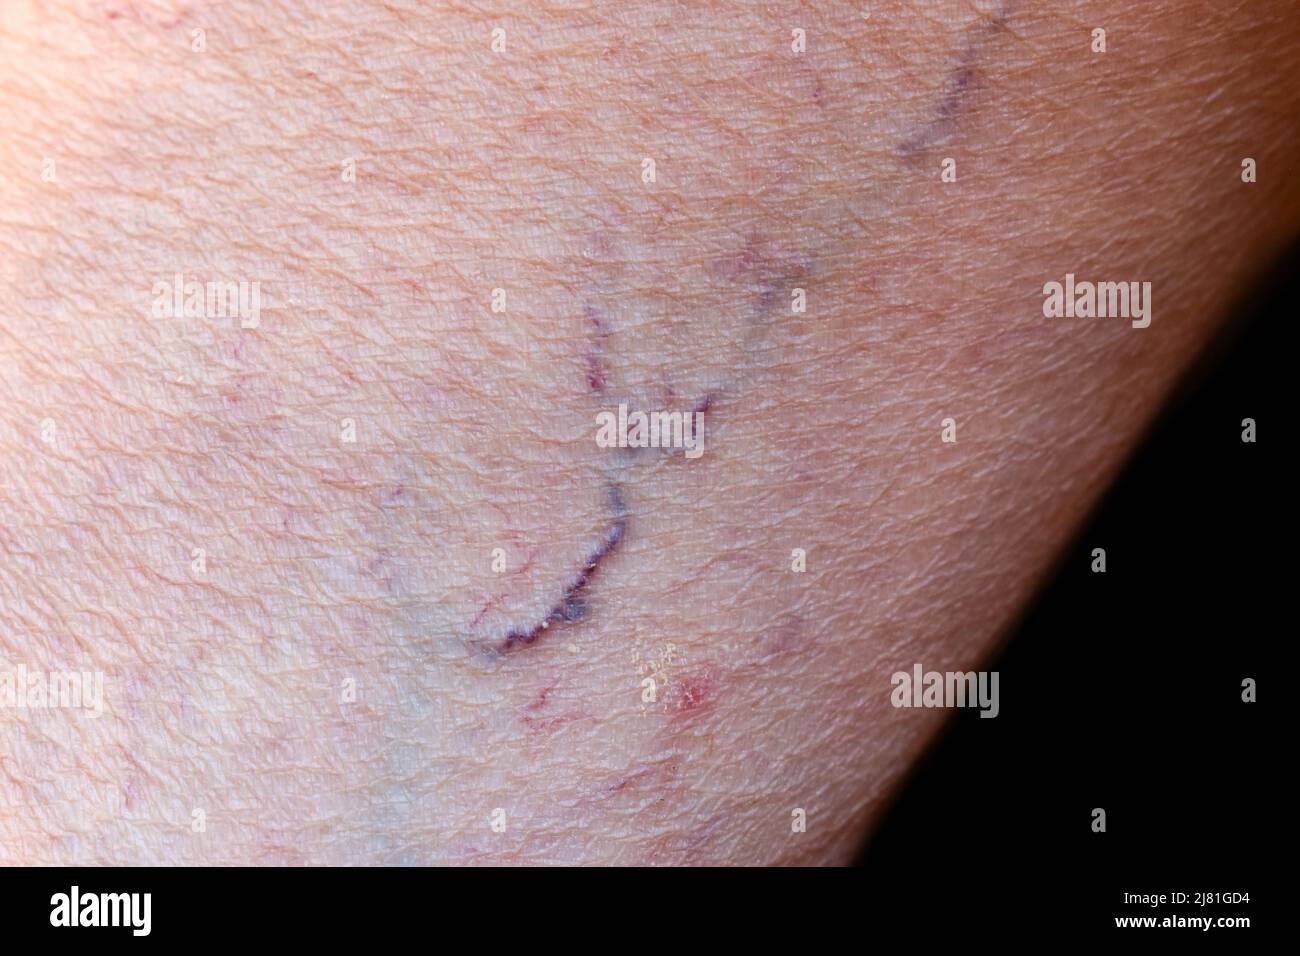 Prominente Venen sichtbar durch die dünne Haut der asiatischen alten Frau. Stockfoto